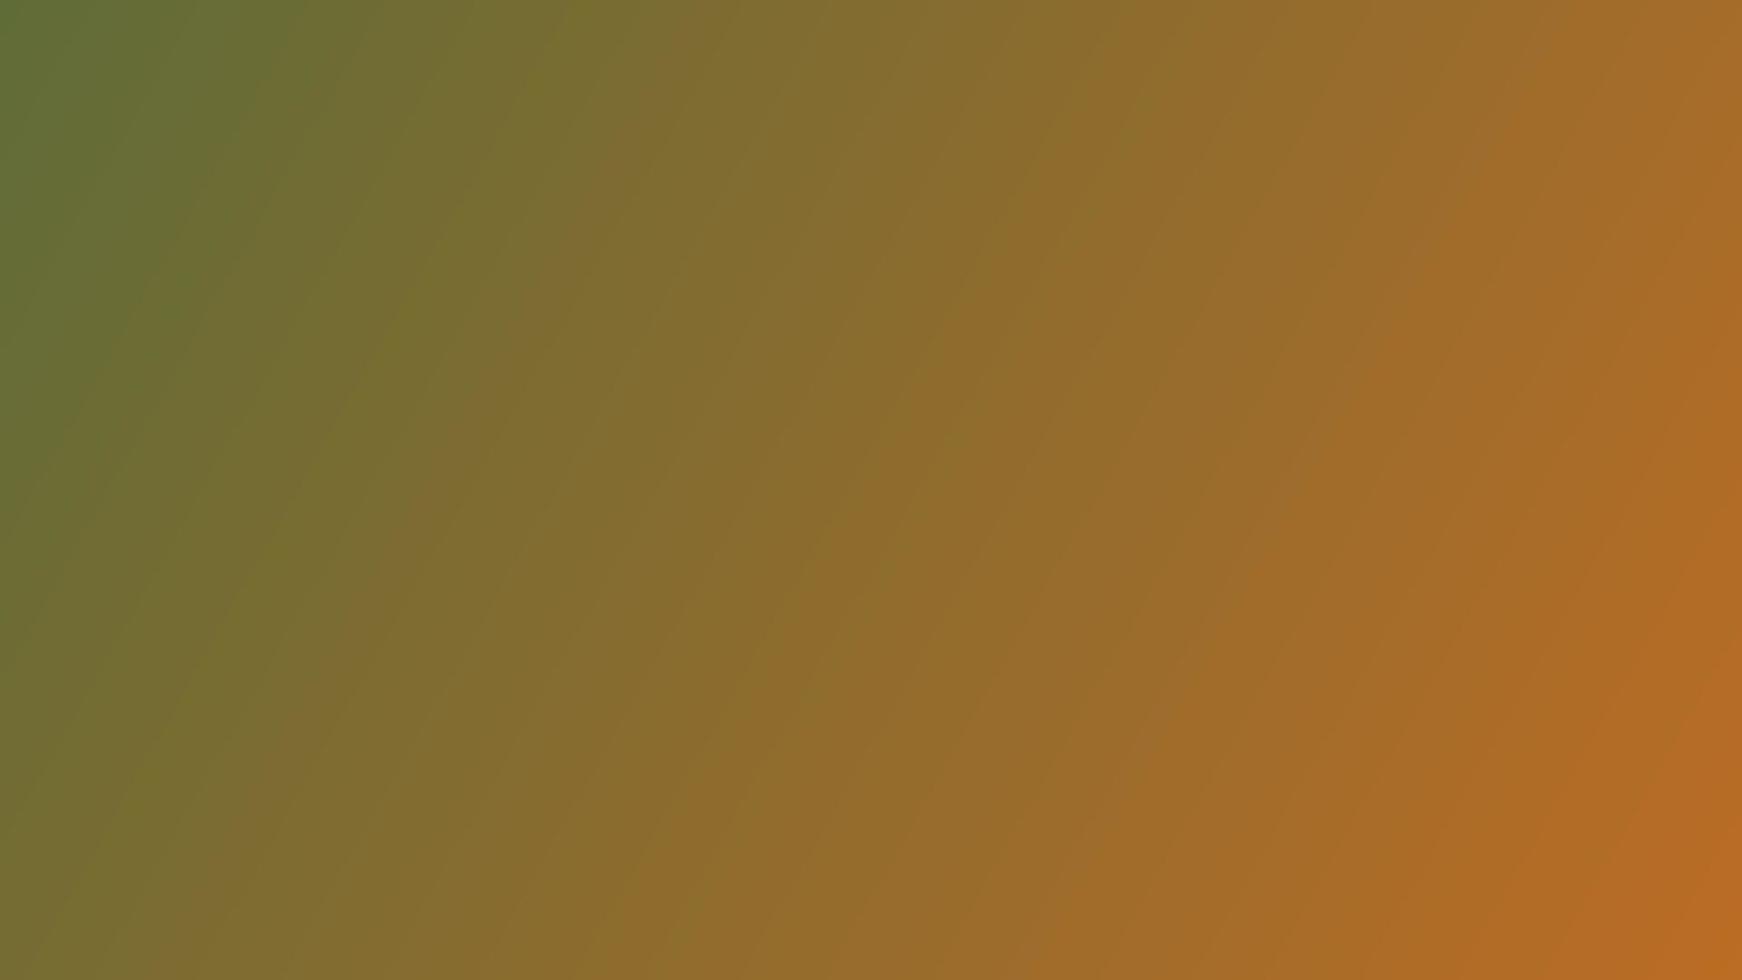 astratto sfocato desaturato giallo e forte arancia pendenza sfondo. senza soluzione di continuità moderno orizzontale vettore design per mobile app, grafico disegno, bandiera o manifesto, atterraggio pagina, web design, il branding